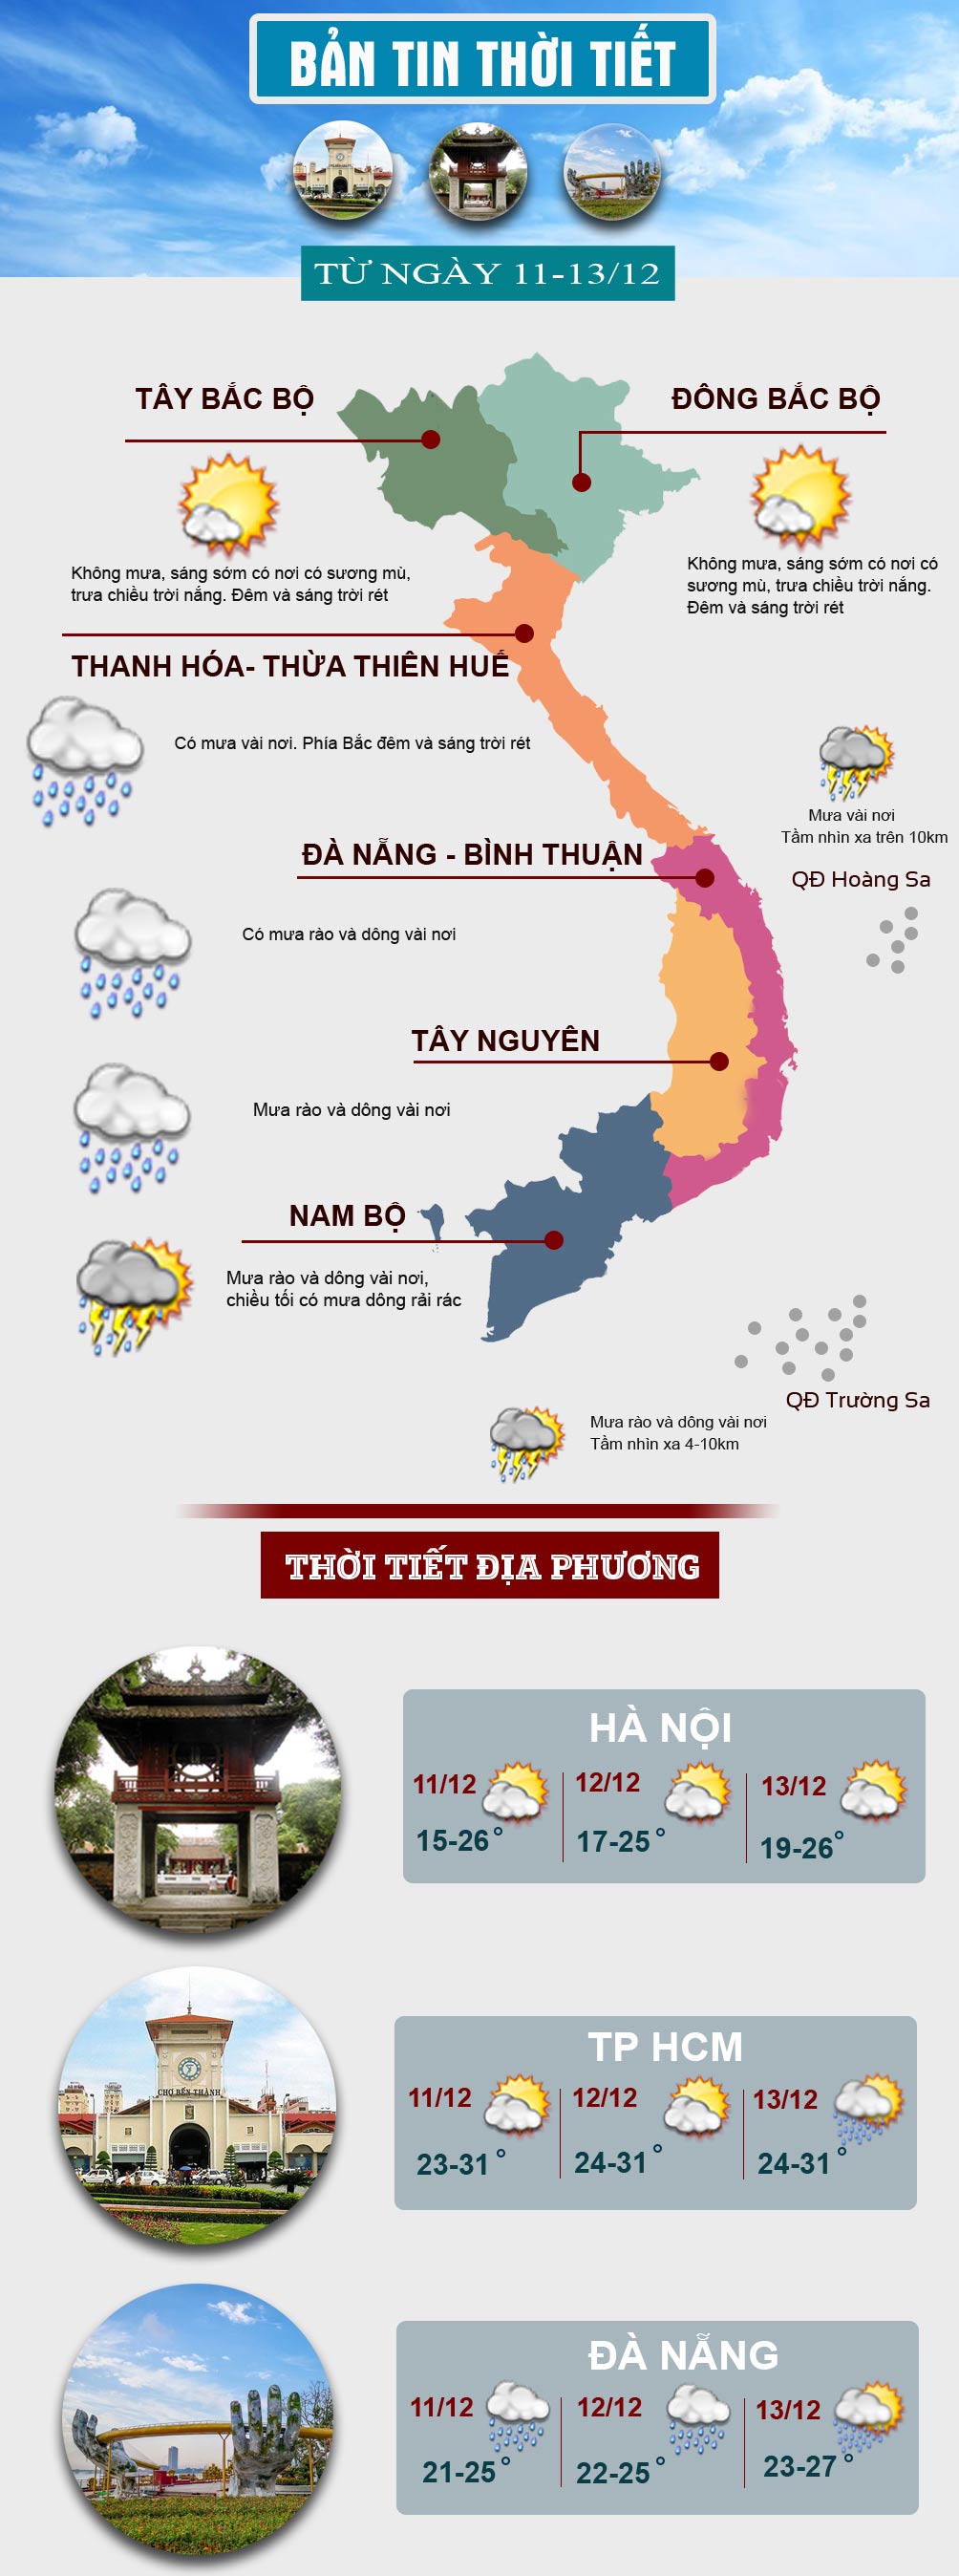 Thời tiết cuối tuần: Miền Bắc nắng hanh, miền Trung mưa dông - 1